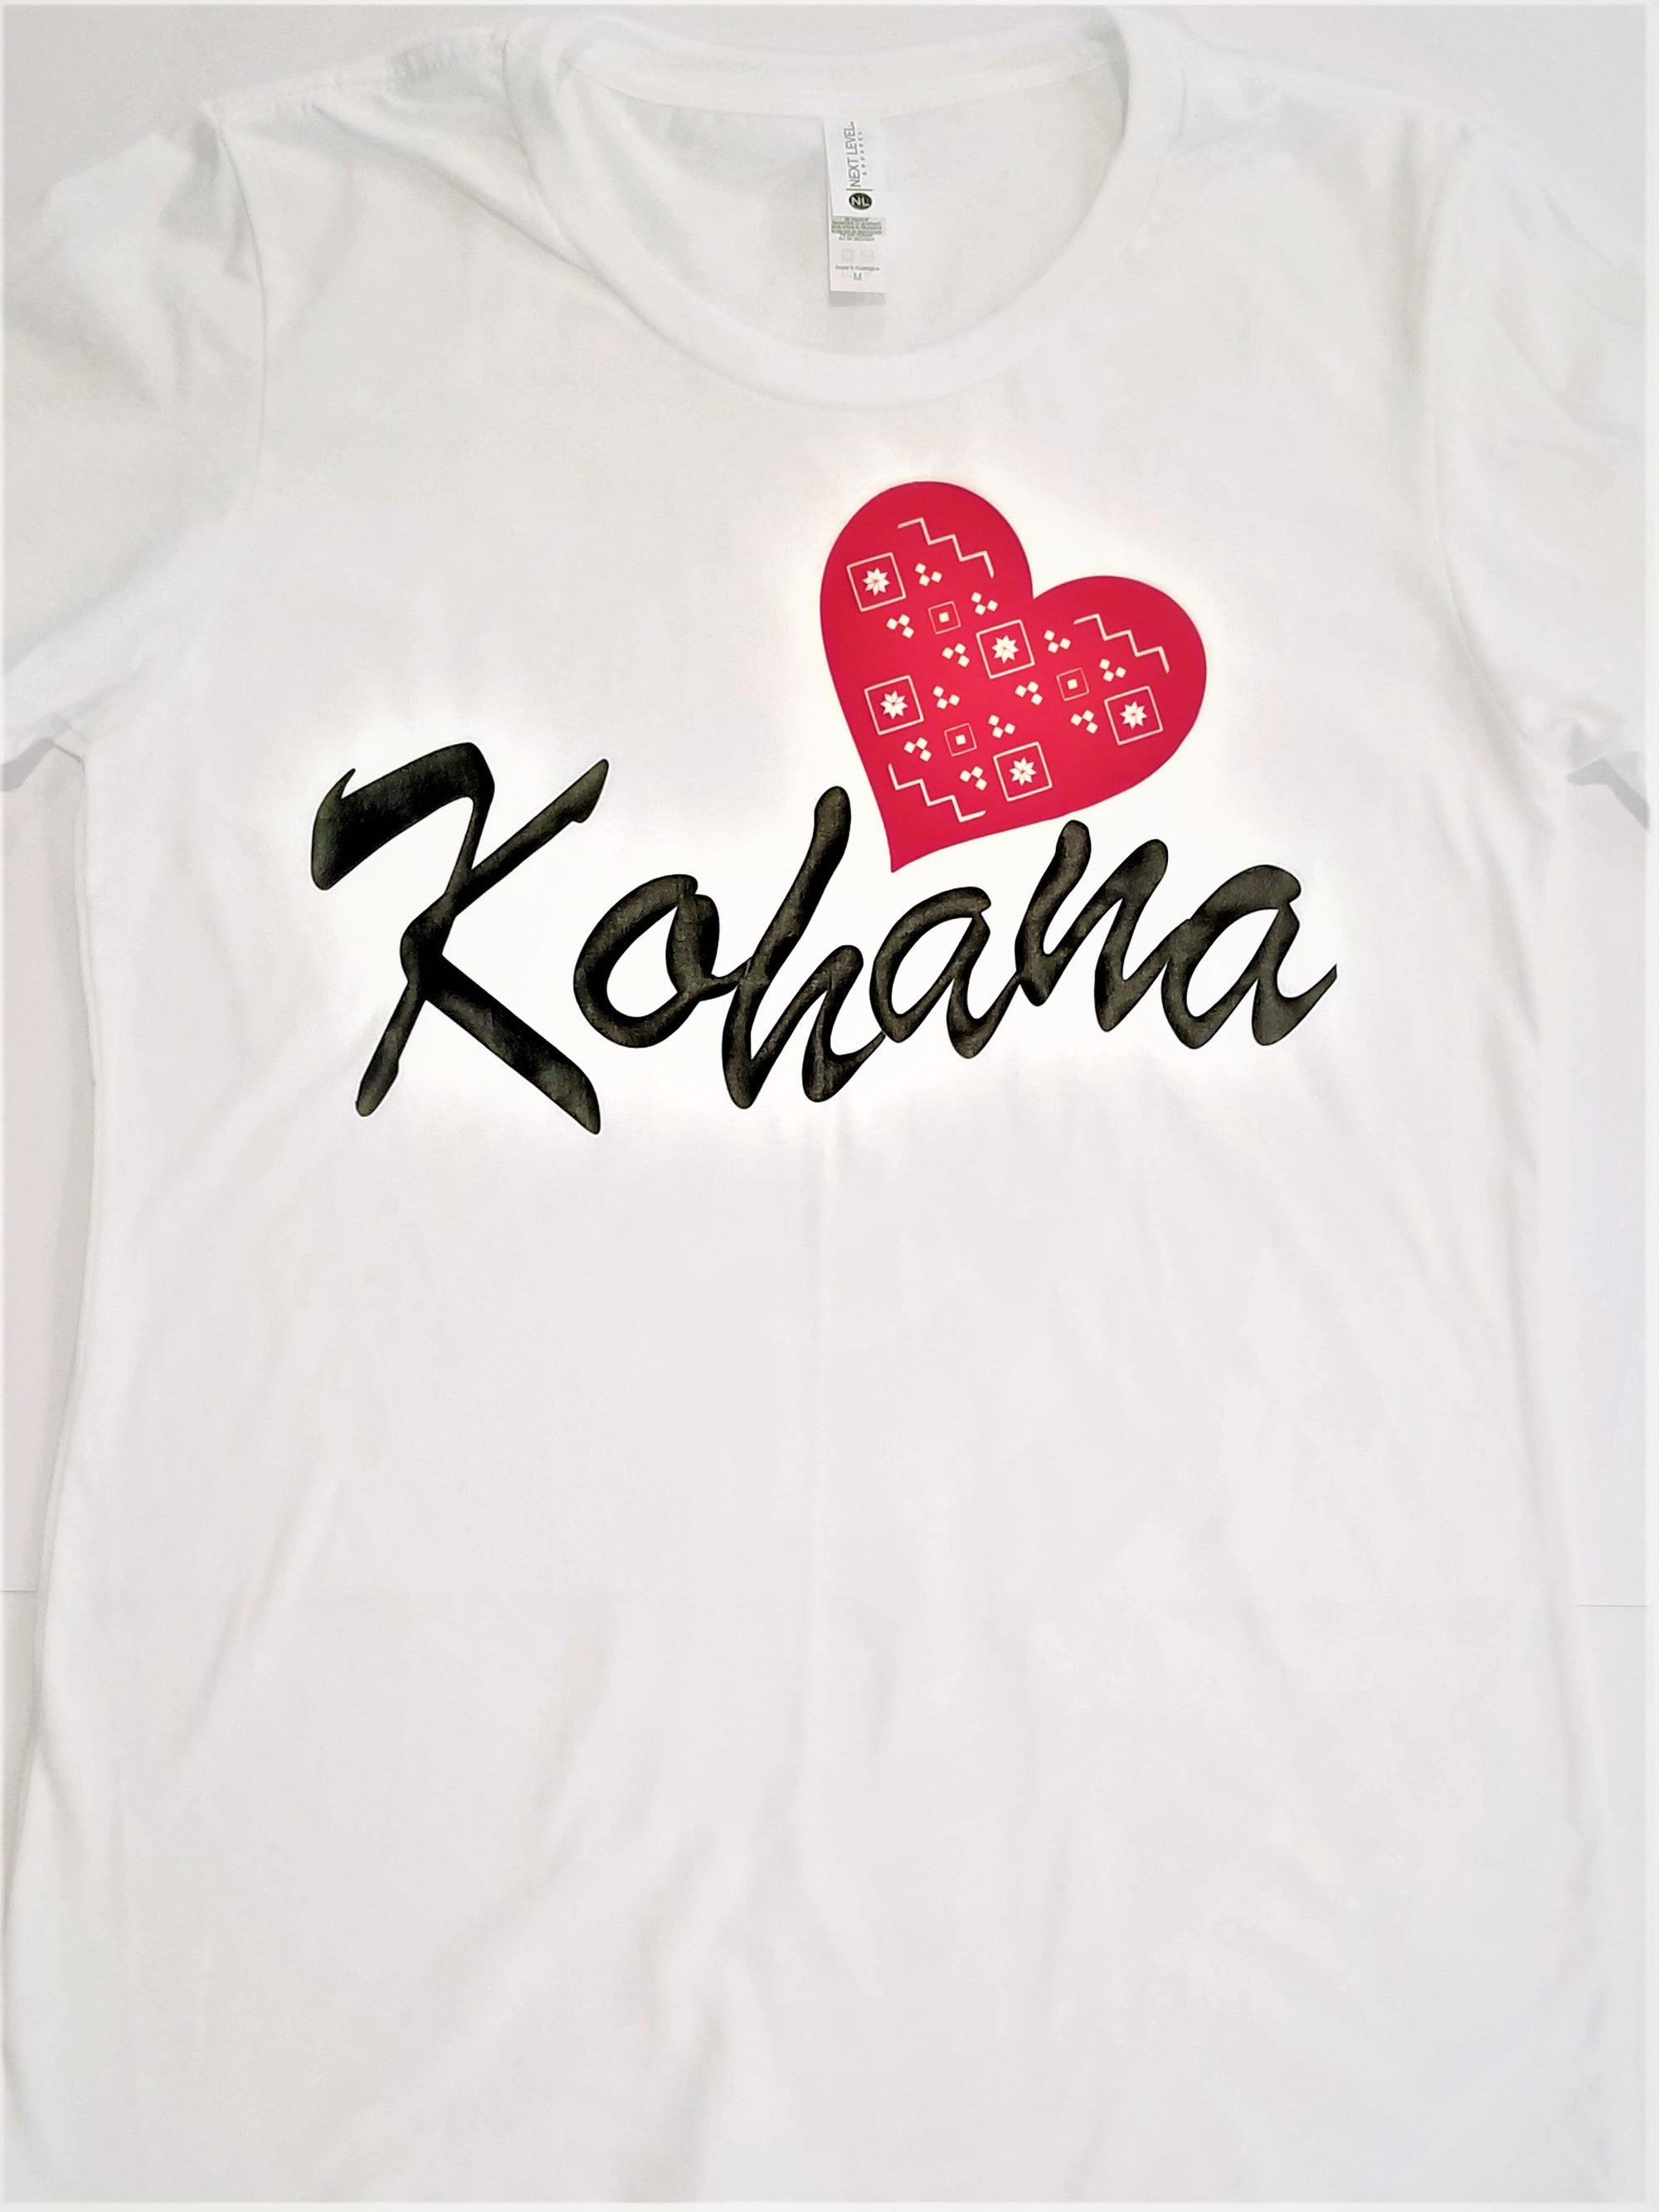 Female fit t-shirt "Kohana"